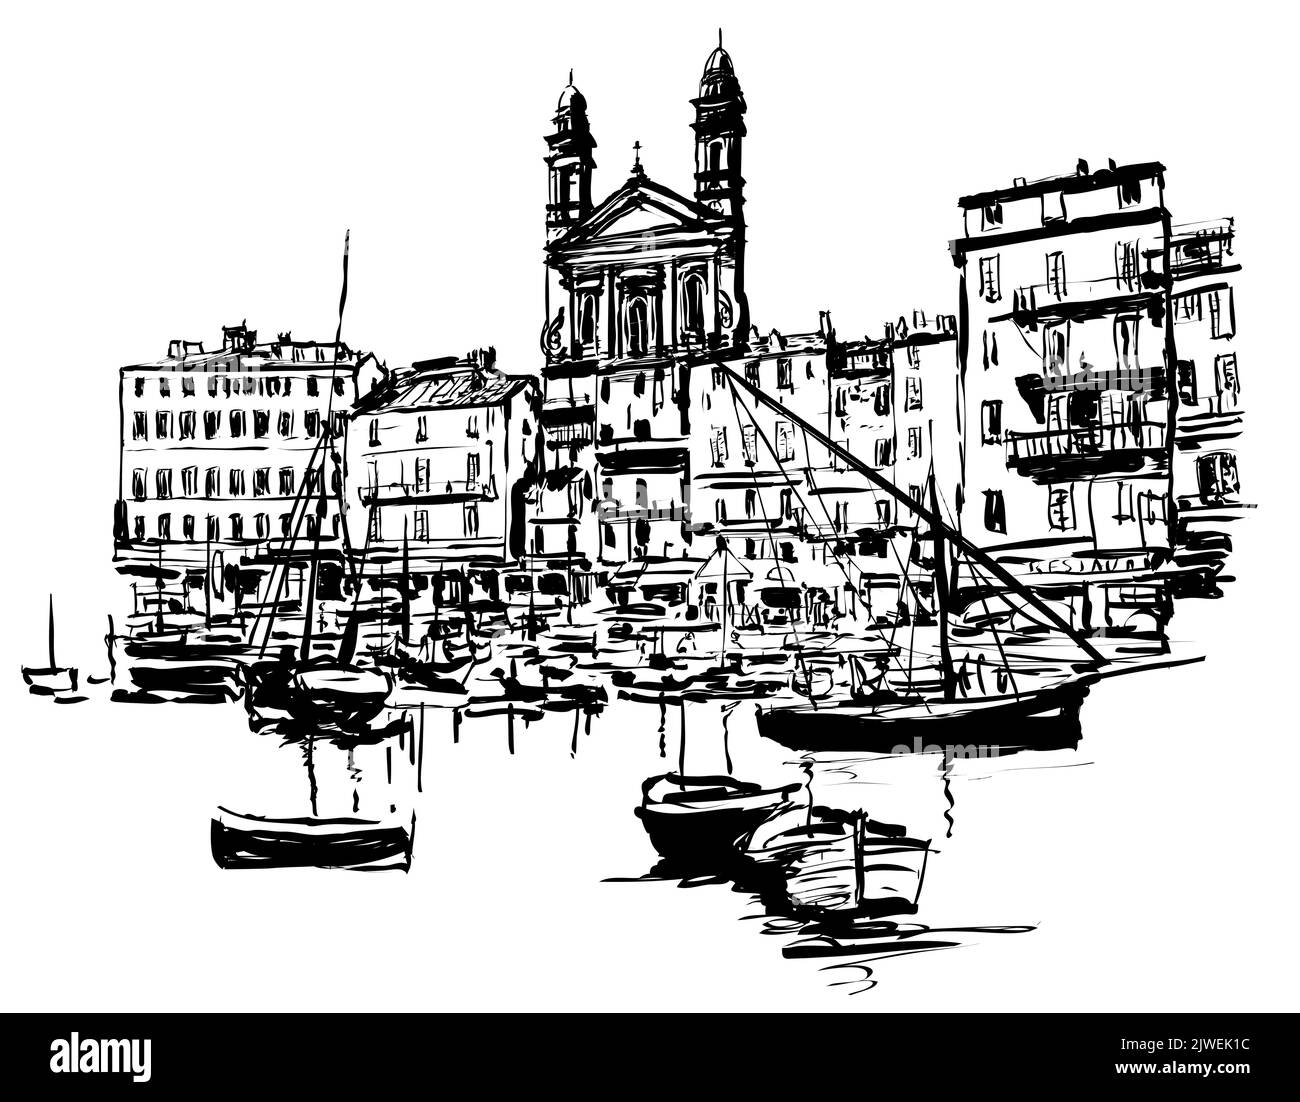 Bastia alter Hafen - Korsika, Frankreich - Vektor-Illustration (ideal für den Druck auf Stoff oder Papier, Poster oder Tapeten, Hausdekoration) Stock Vektor